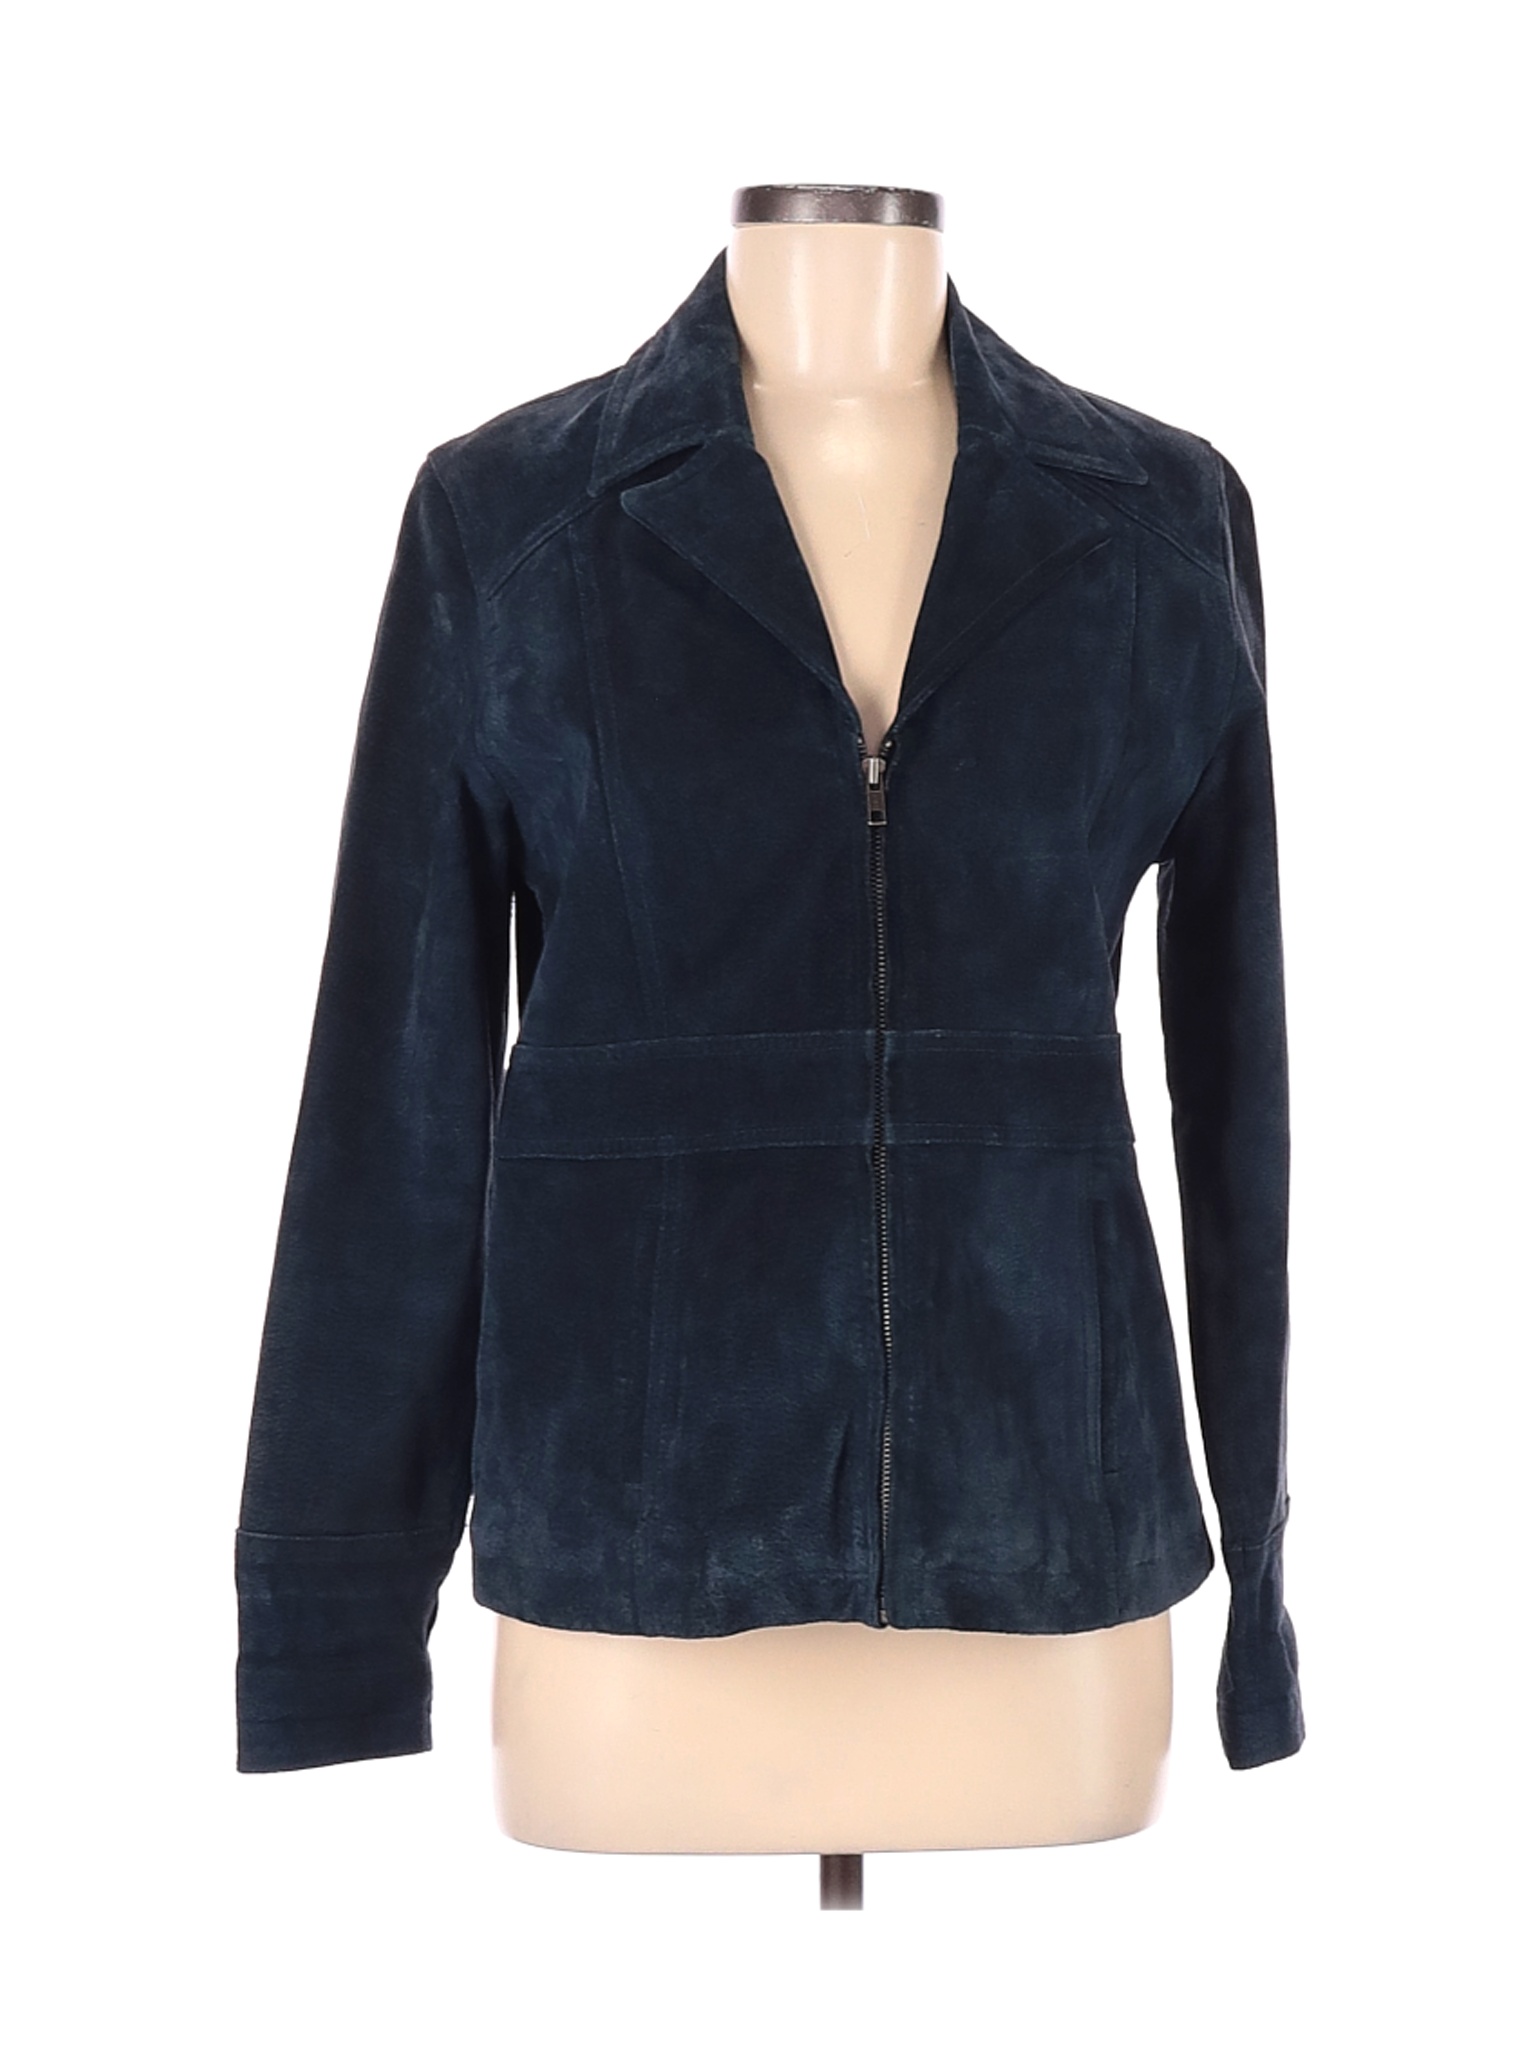 Wilsons Leather Maxima Women Blue Leather Jacket M | eBay